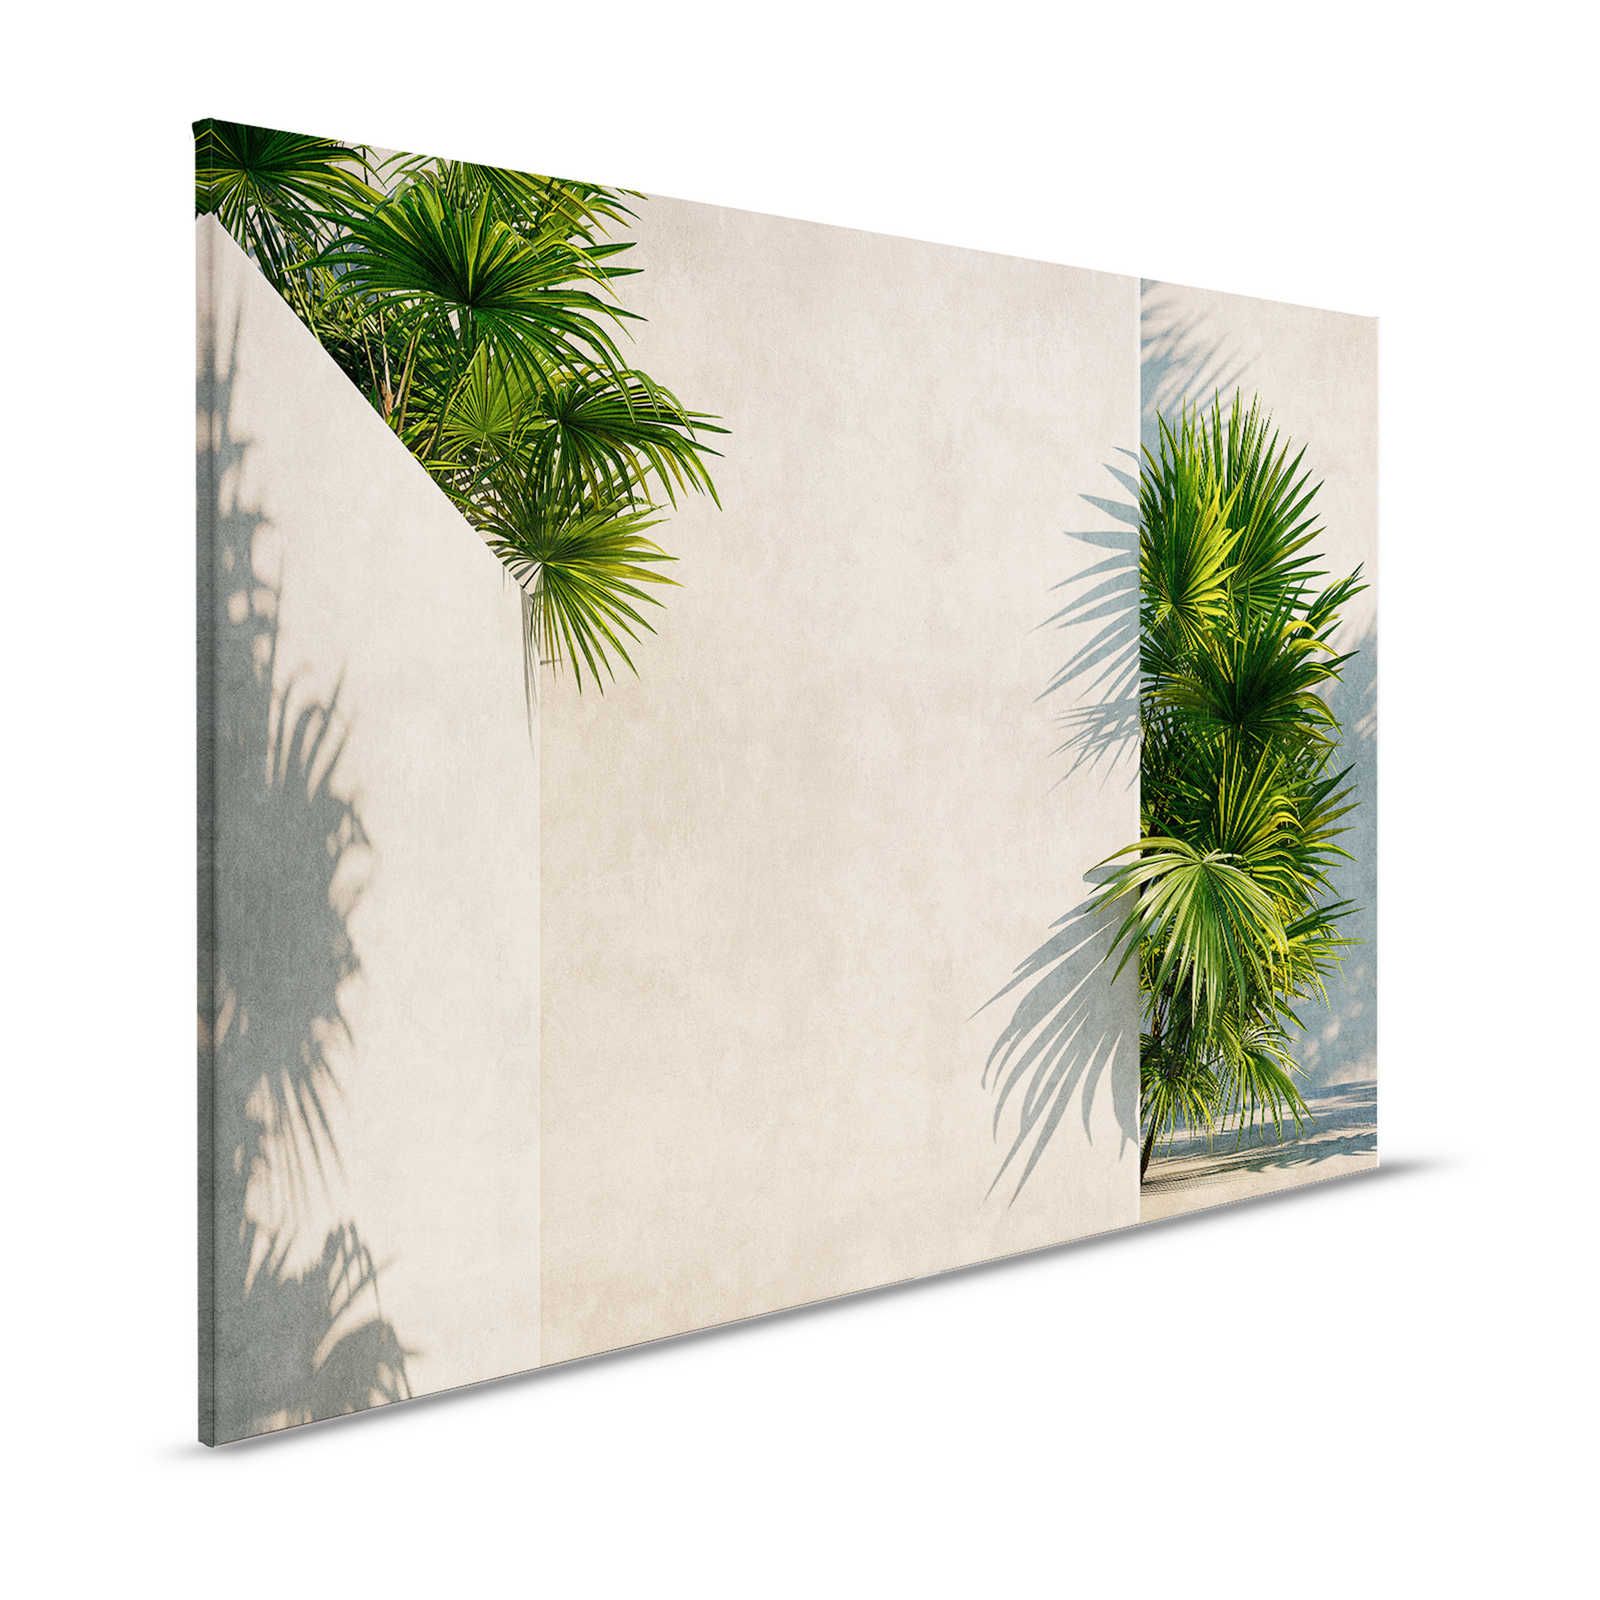 Tunis 1 - Canvas schilderij Palmbomen in binnenplaats met gipswanden - 1.20 m x 0.80 m
